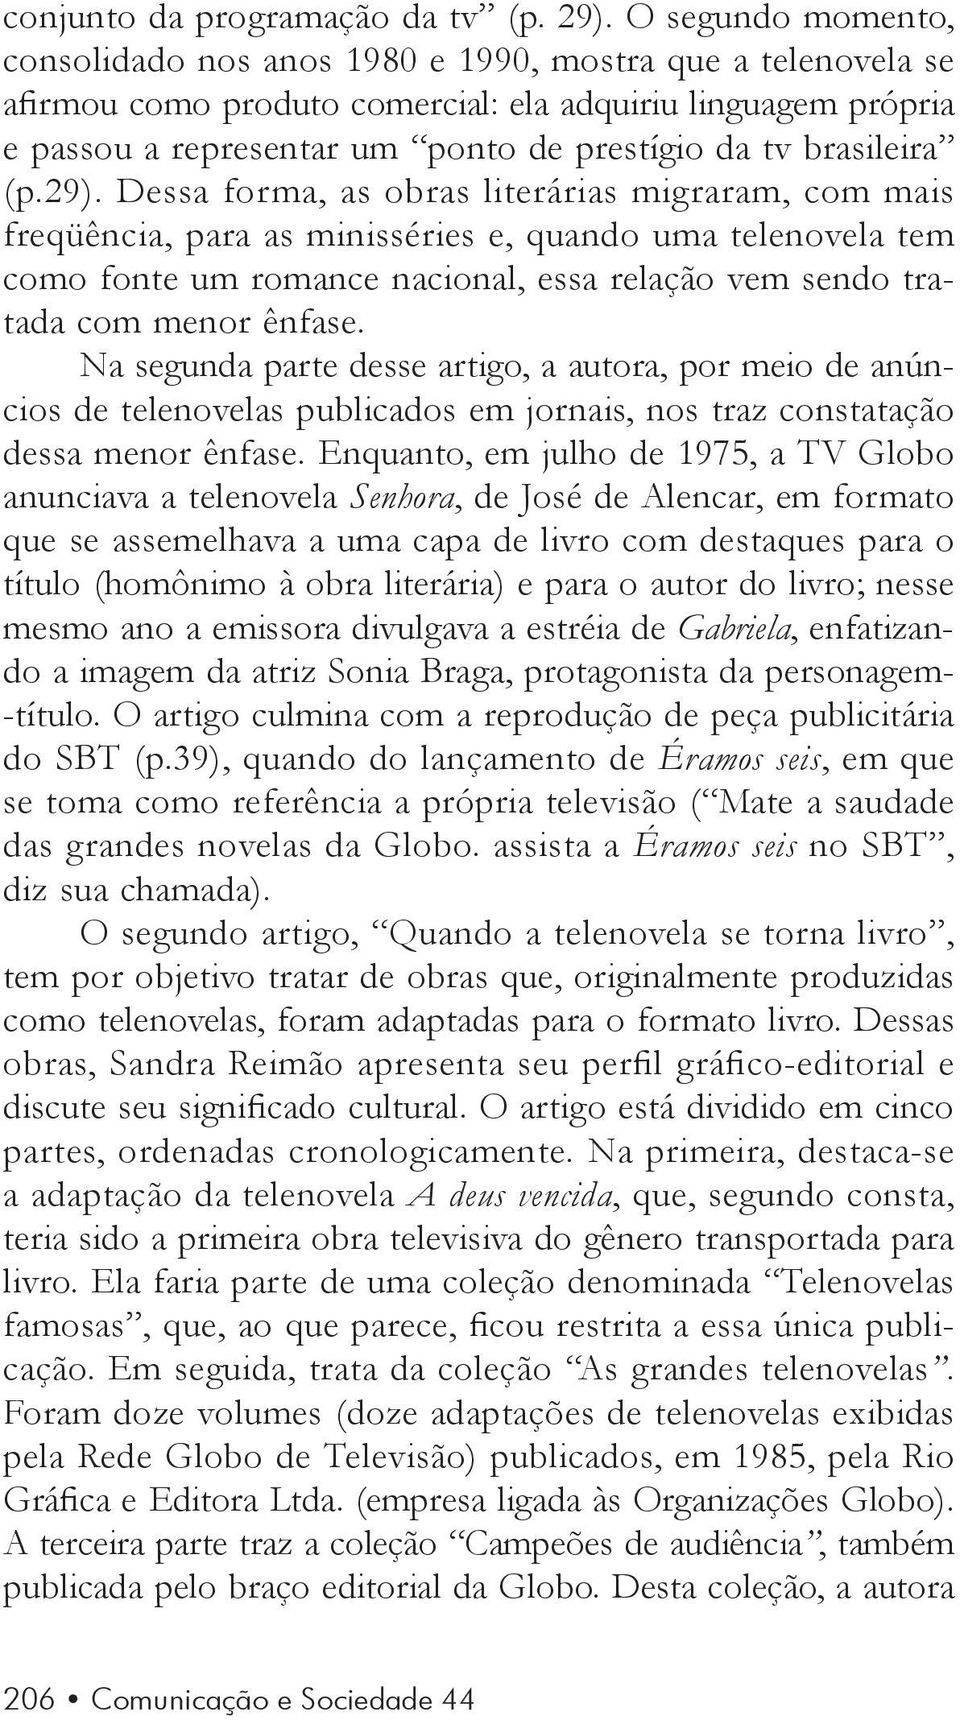 brasileira (p.29).